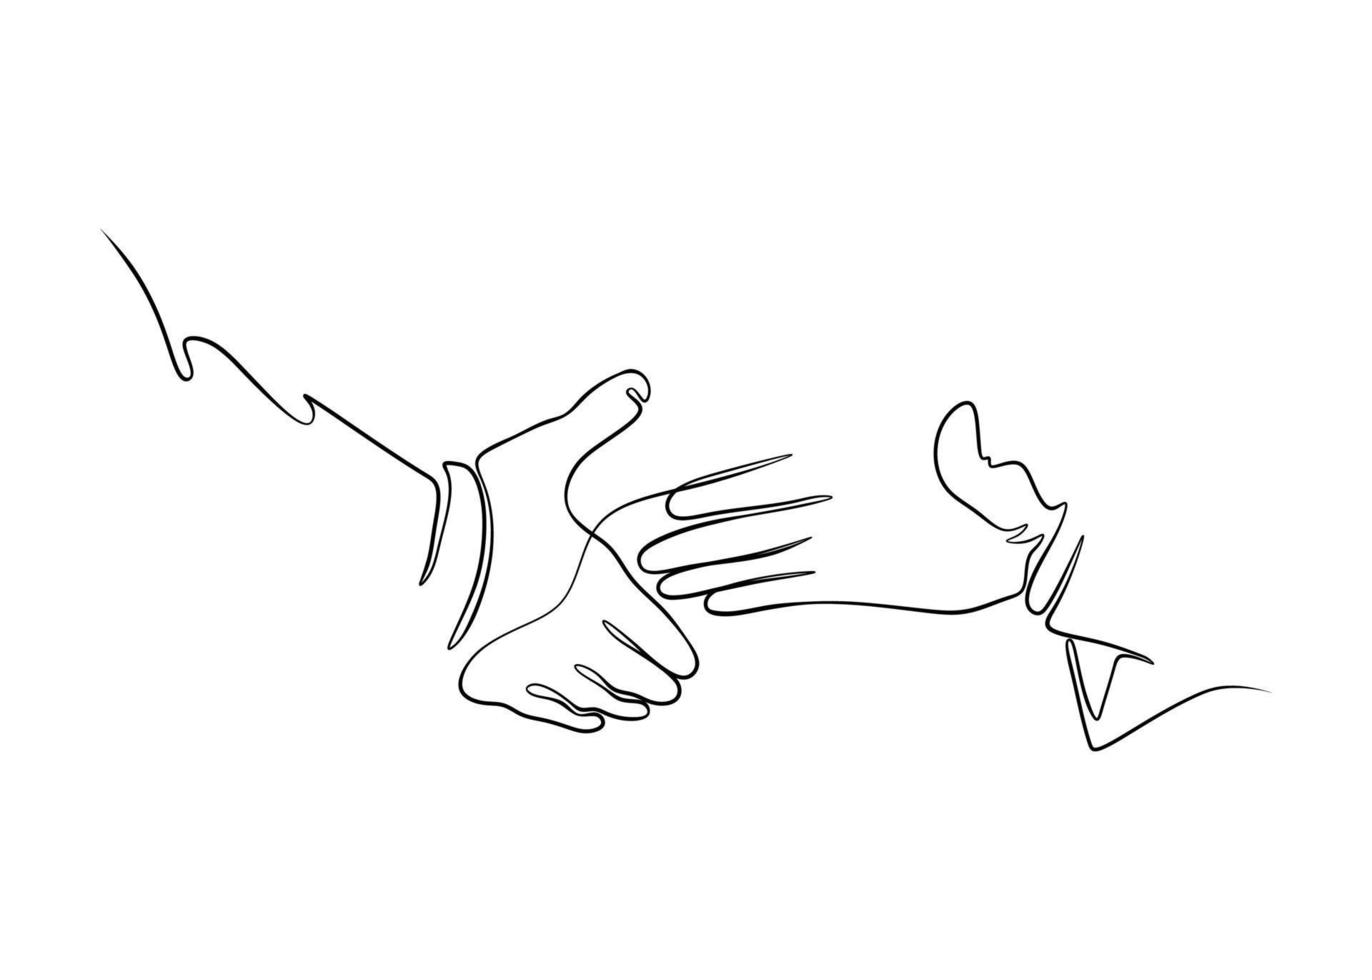 Zwei Hände kommen in die Nähe, um sich die Hände zu schütteln, um zusammenzuarbeiten, eine Linie ansteckende Linienvektorillustration vektor